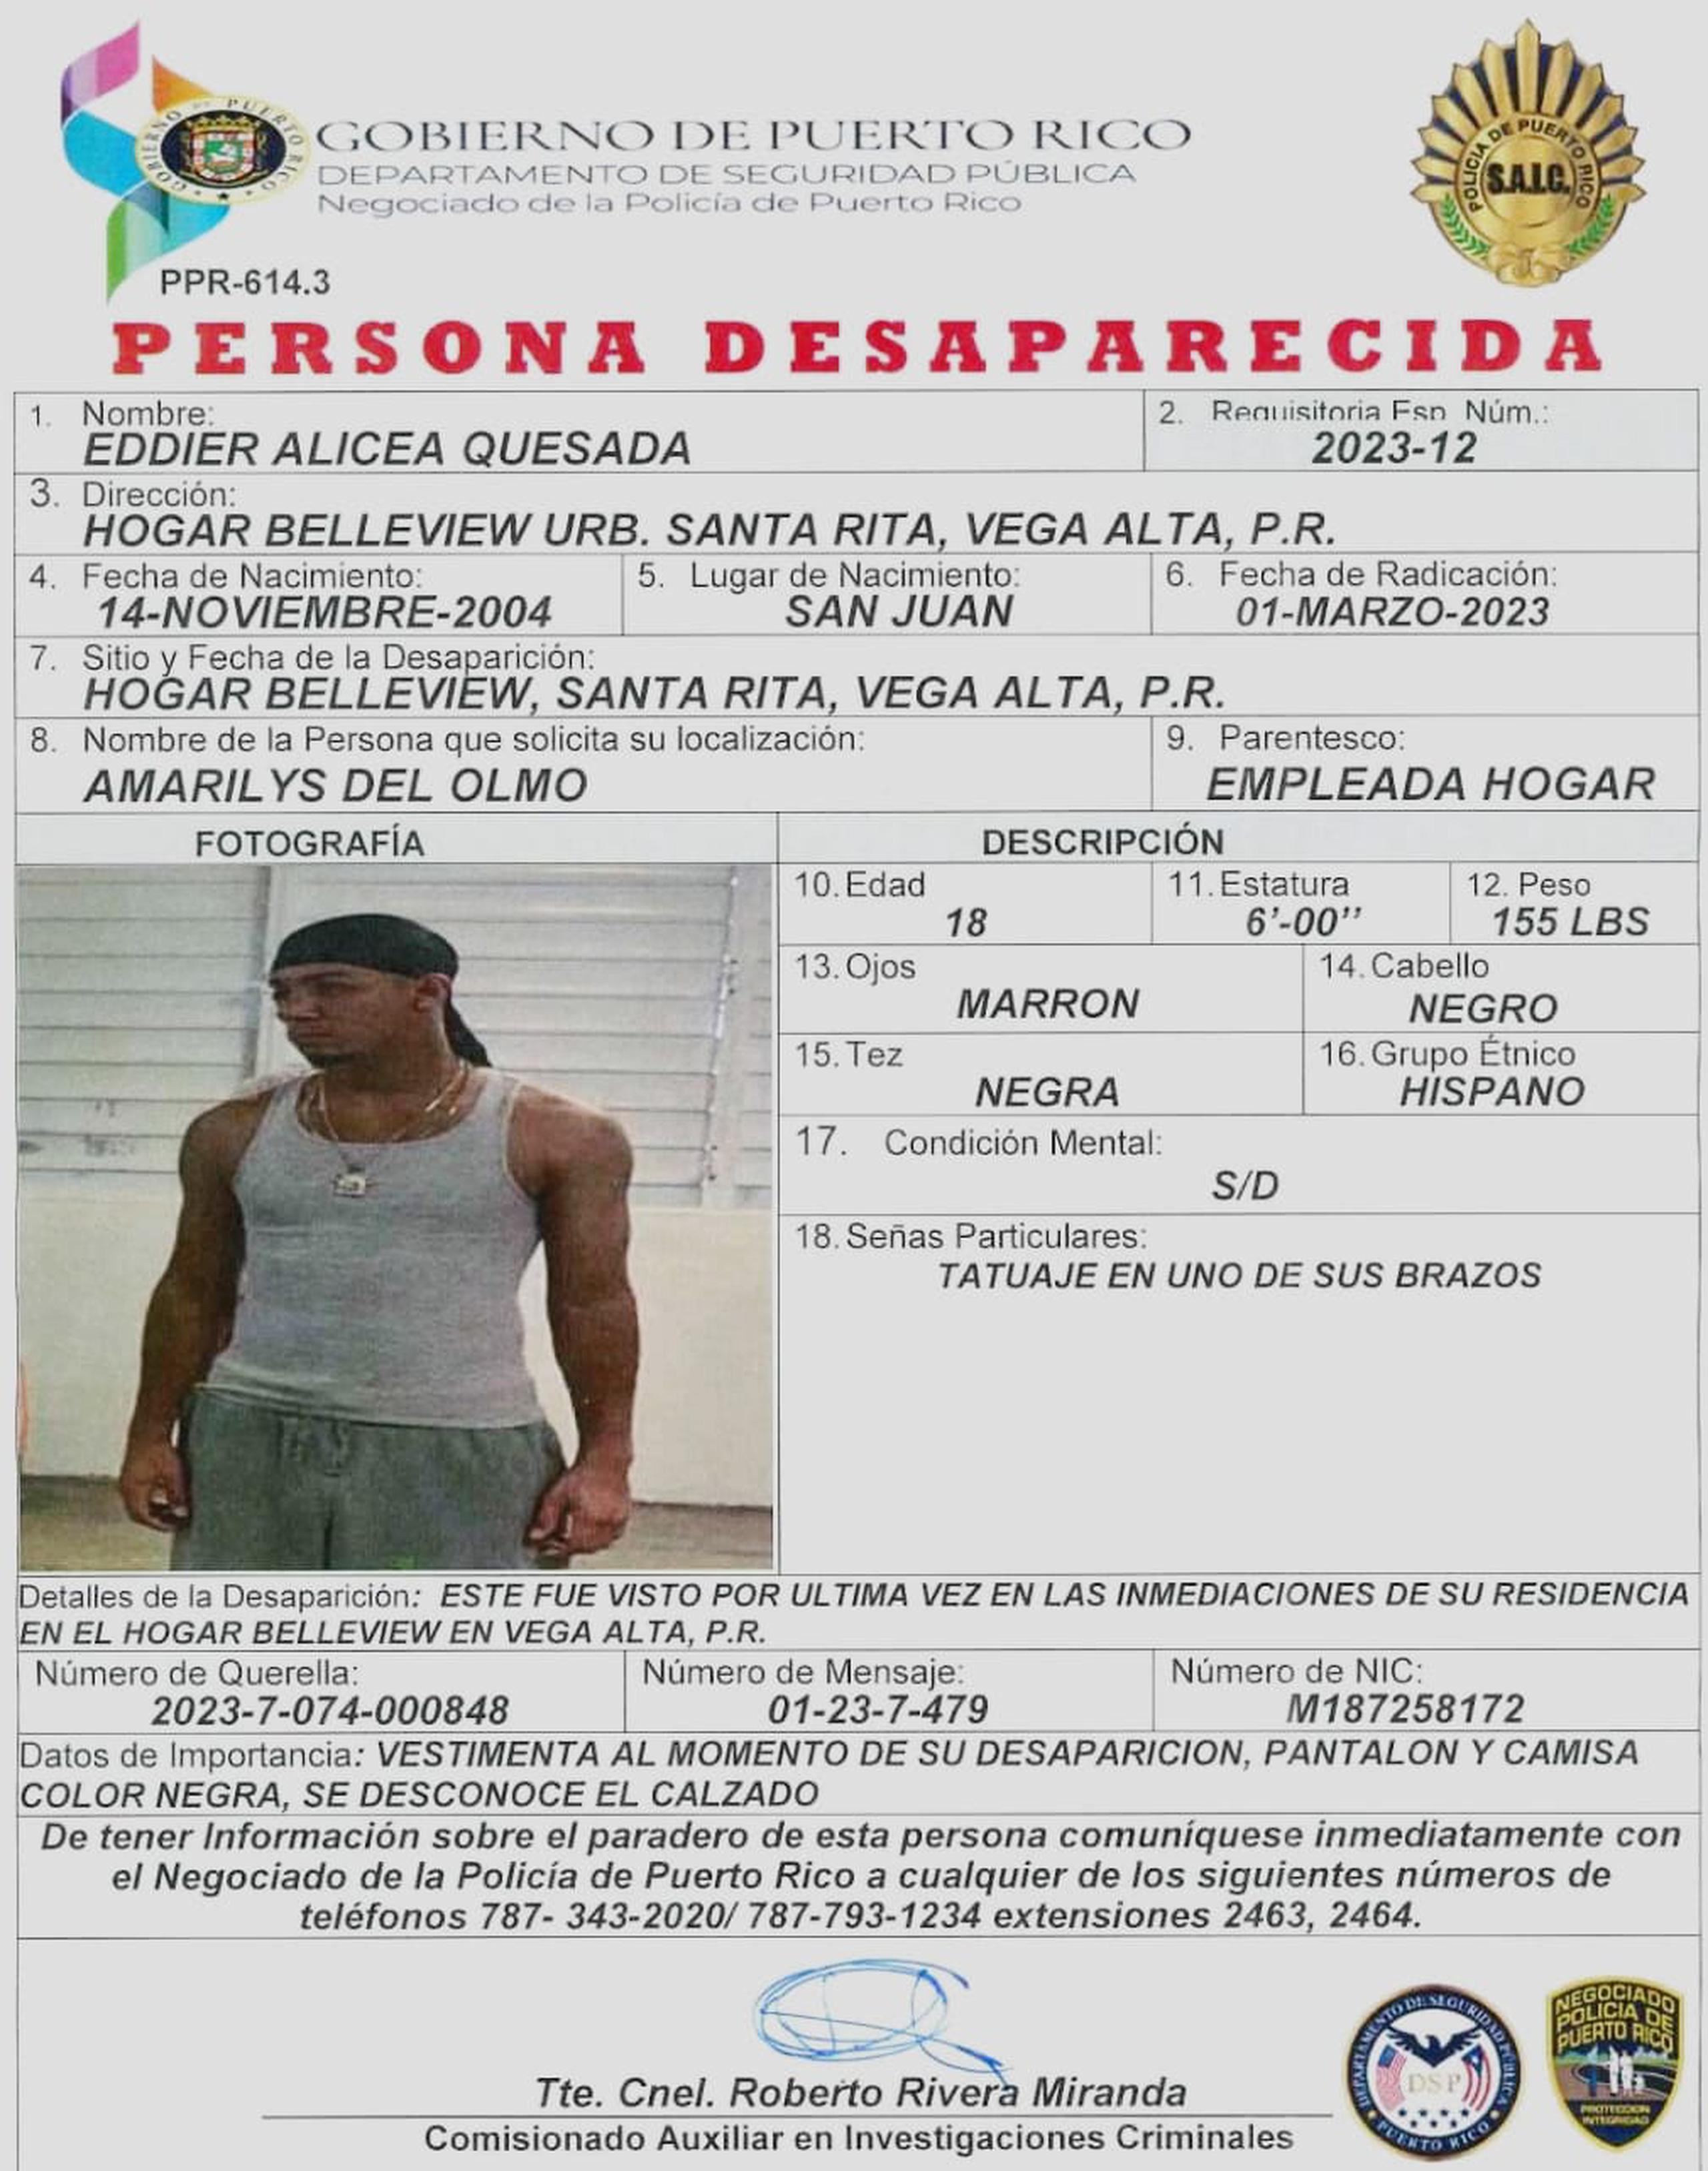 Eddier Alicea Quesada, de 18 años, se encuentra desaparecido desde el 1 de marzo. Si lo ha visto llame al (787) 343-2020.